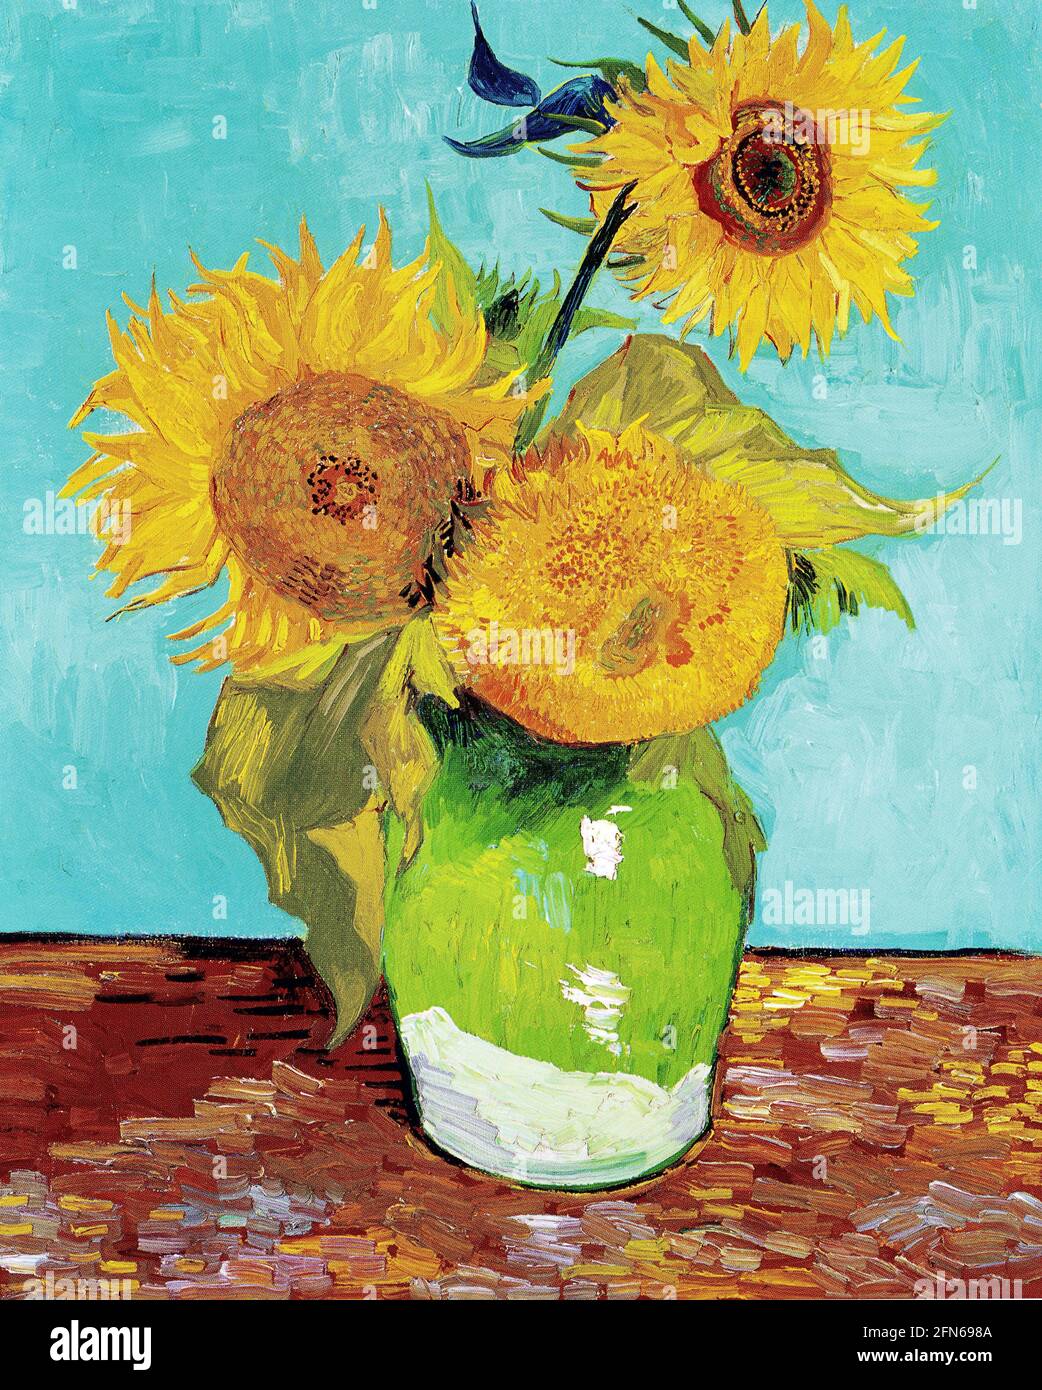 Œuvre d'art de Vincent van Gogh - trois tournesols dans un vase. Trois tournesols avec des pétales orange jaunes sont représentés sur un fond turquoise. Banque D'Images